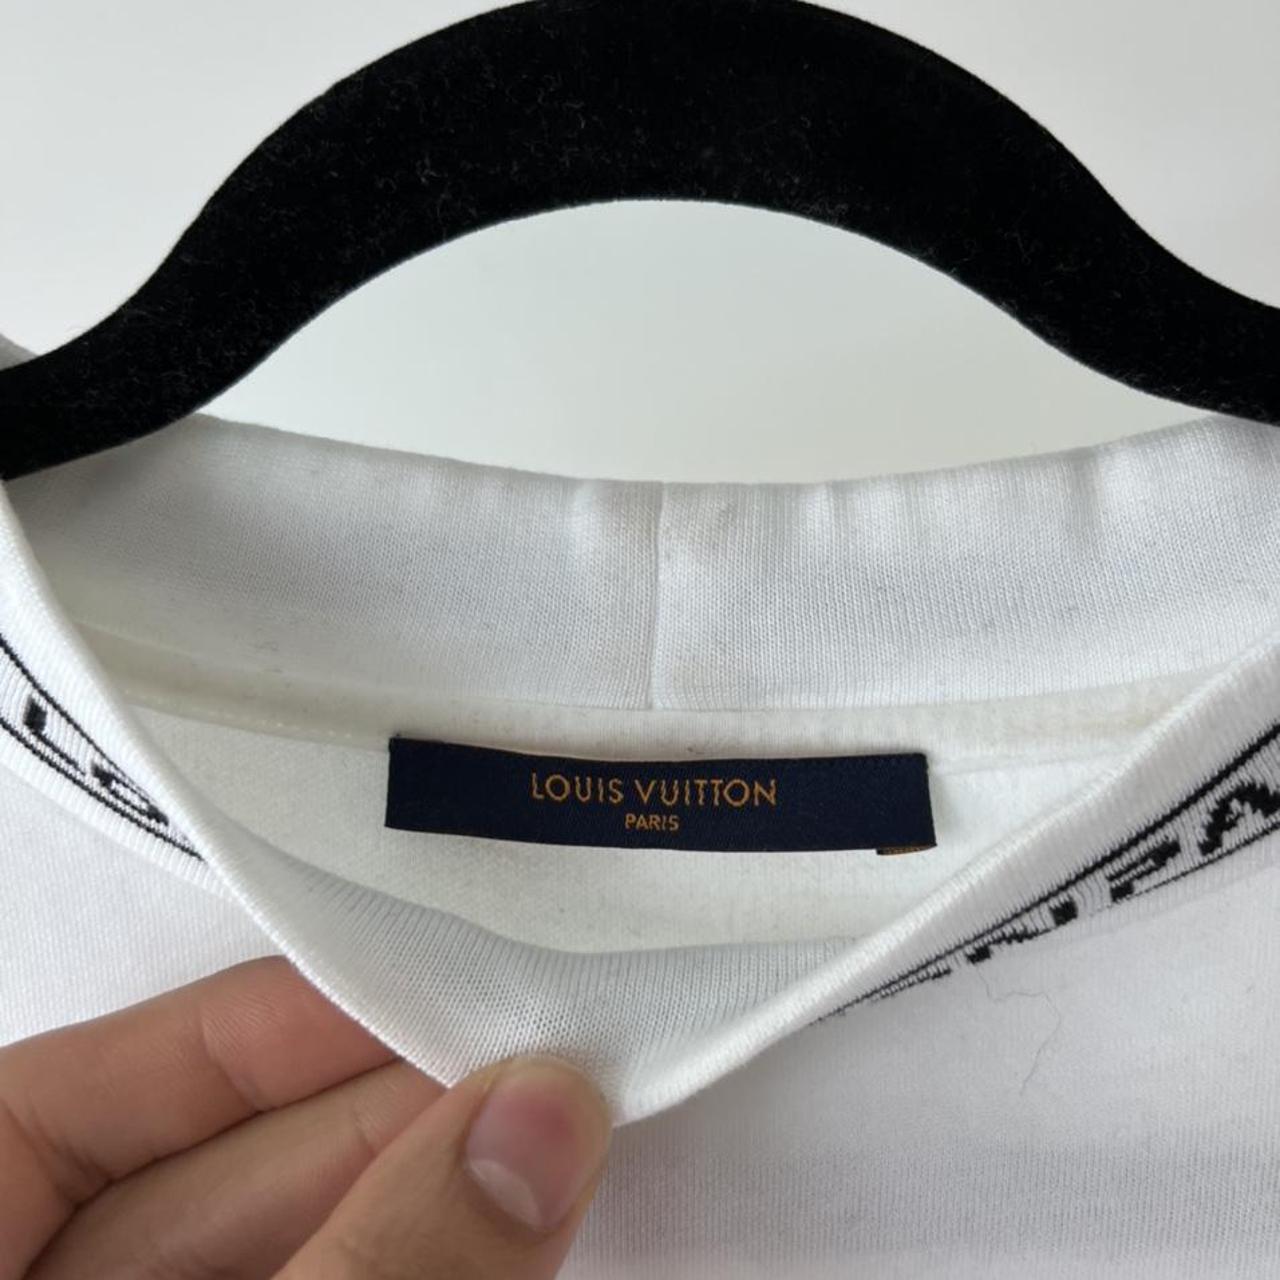 Louis Vuitton Cloud Shirt Size: 4L Fits like a Large - Depop